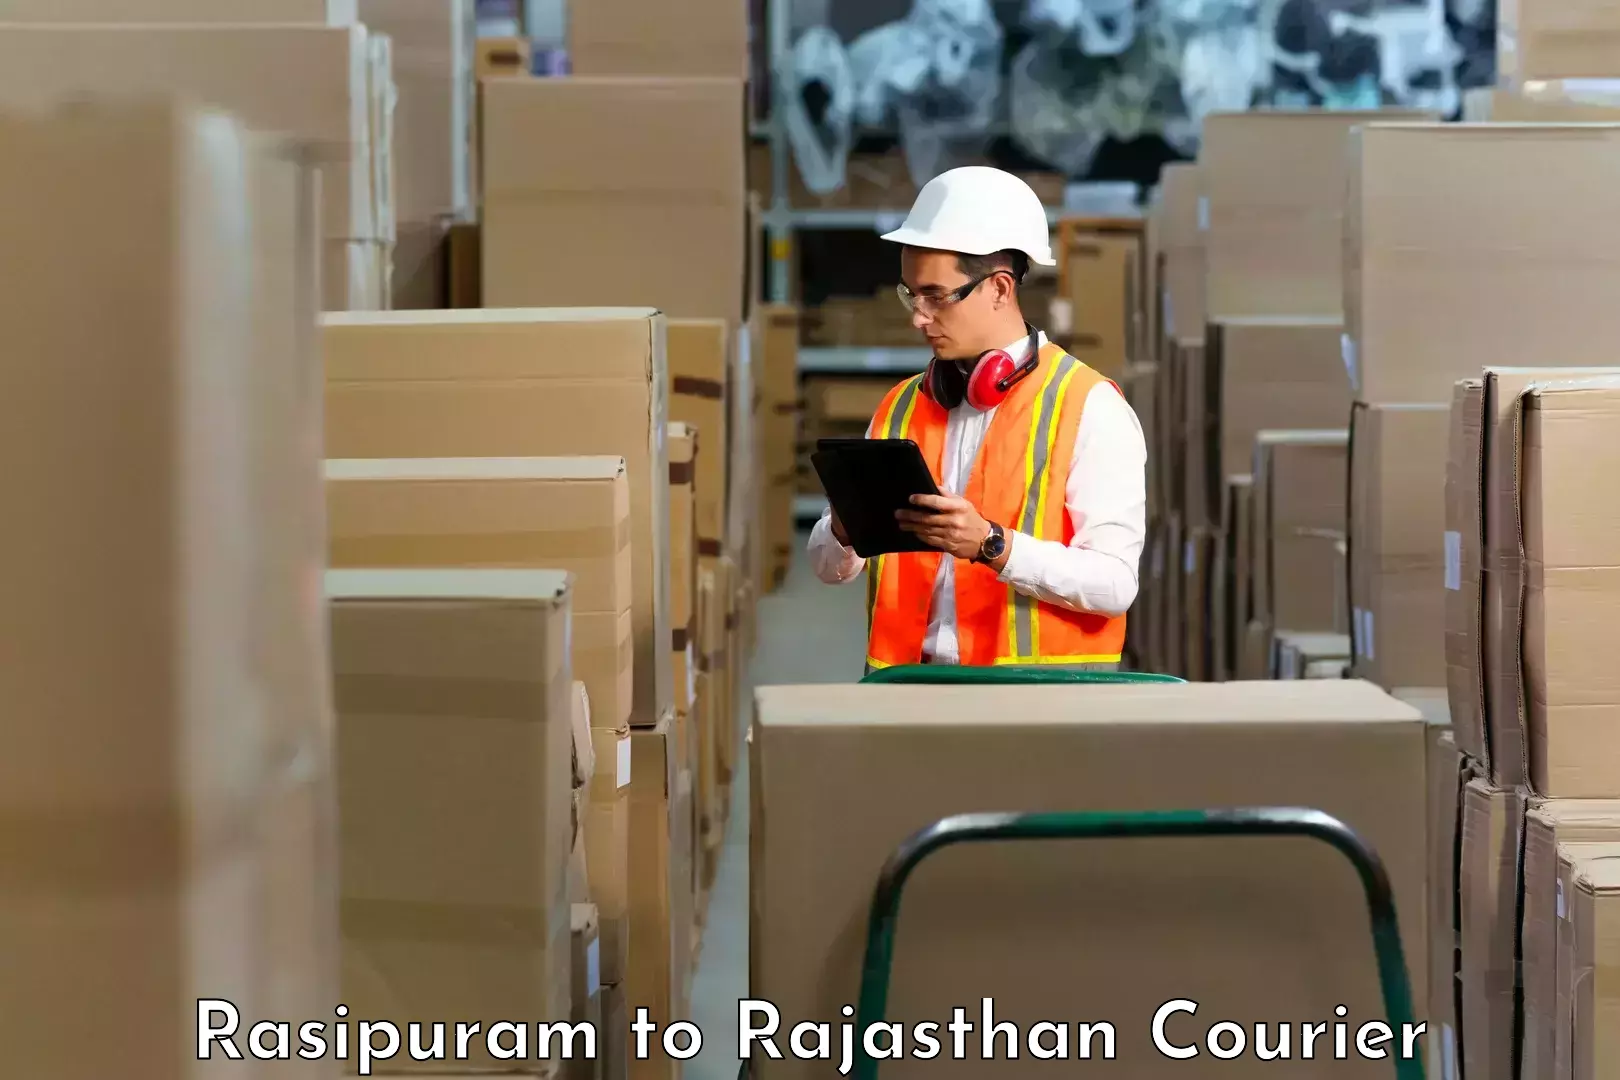 Advanced delivery network Rasipuram to Deshnok